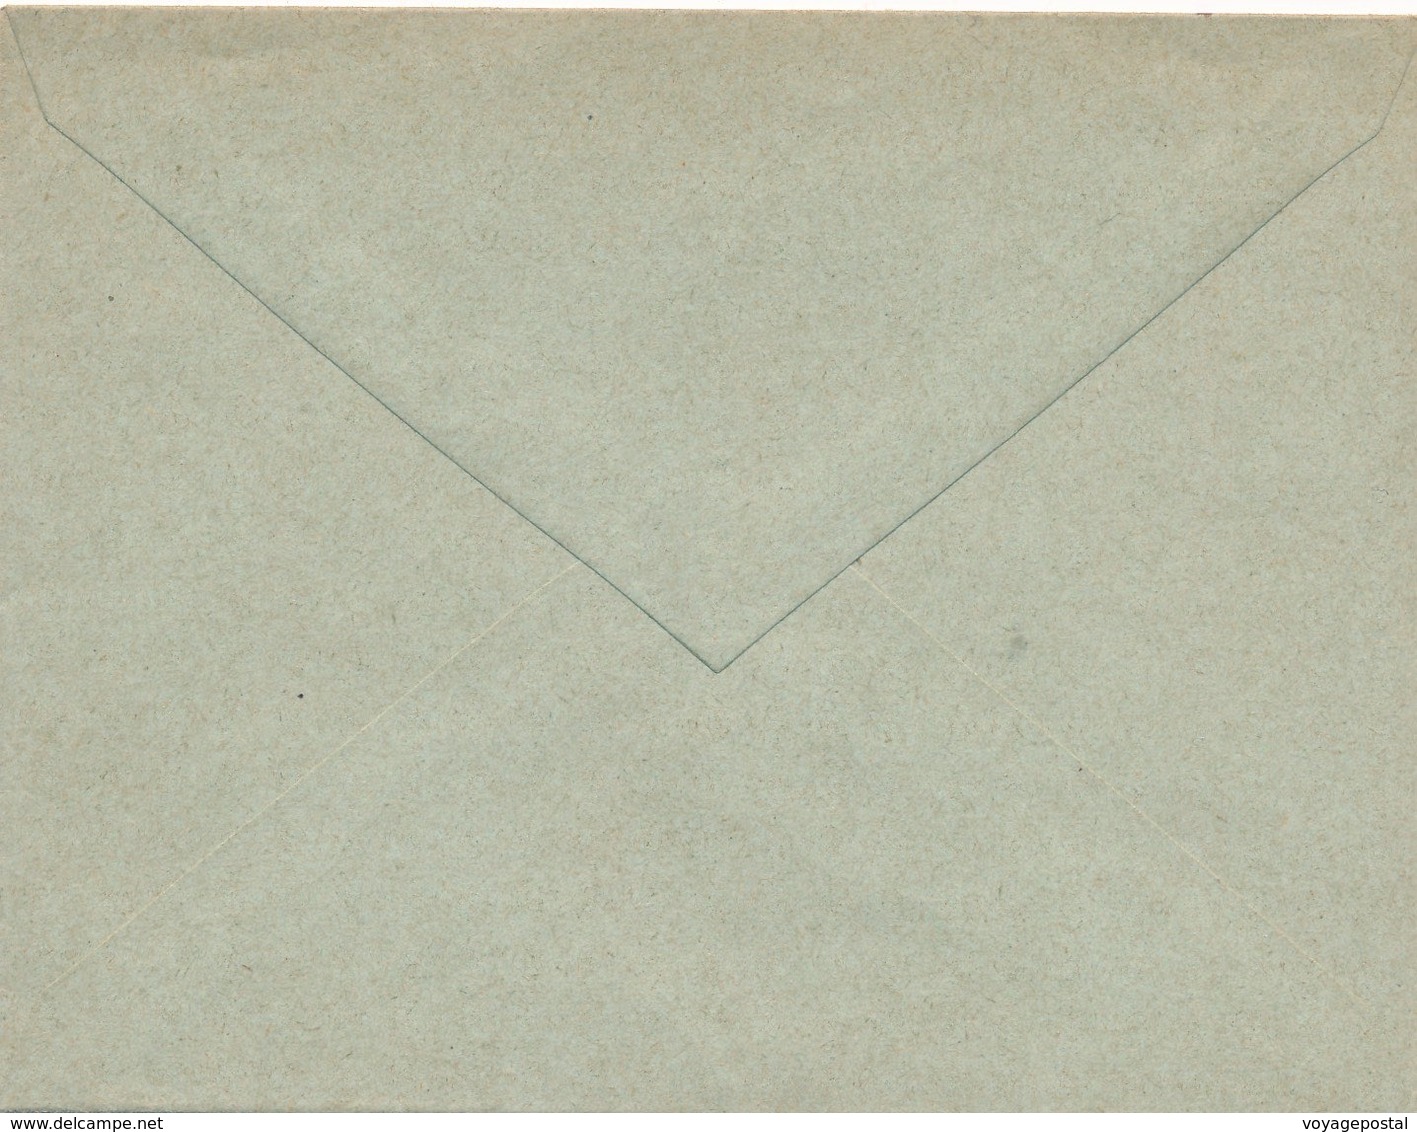 Entier Neuf Lettre 15c  (H 9,5cm, L 12,5cm) - Briefe U. Dokumente